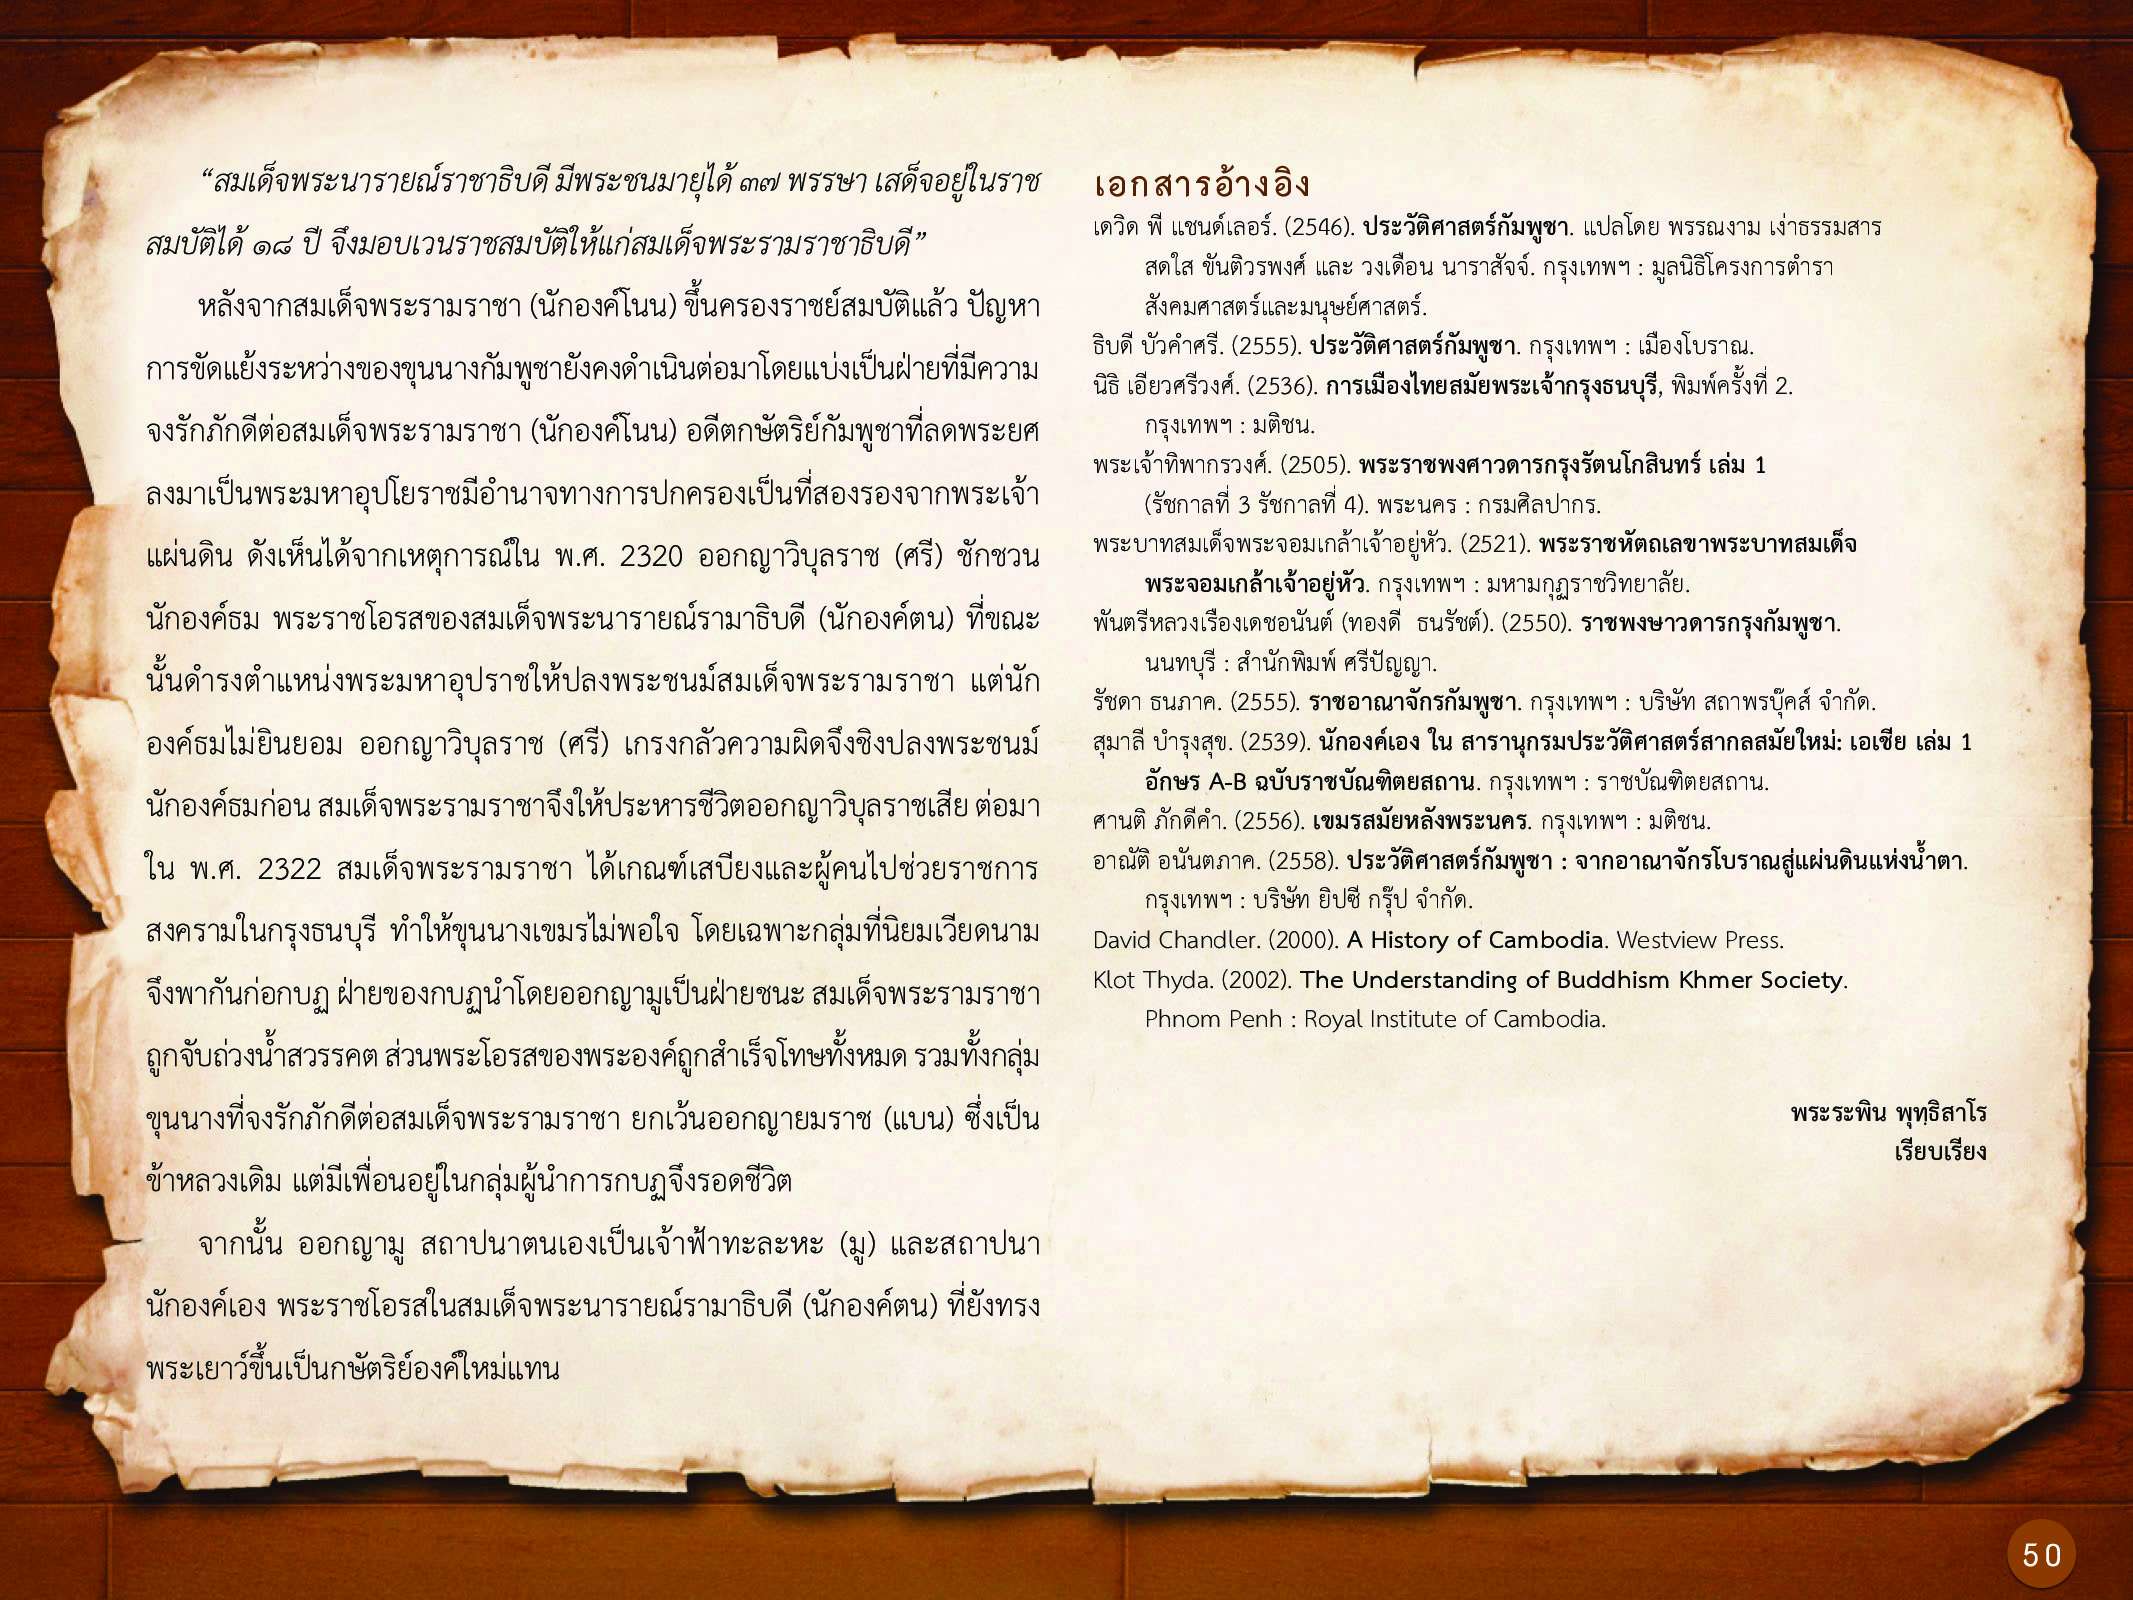 ประวัติศาสตร์กรุงธนบุรี ./images/history_dhonburi/50.jpg